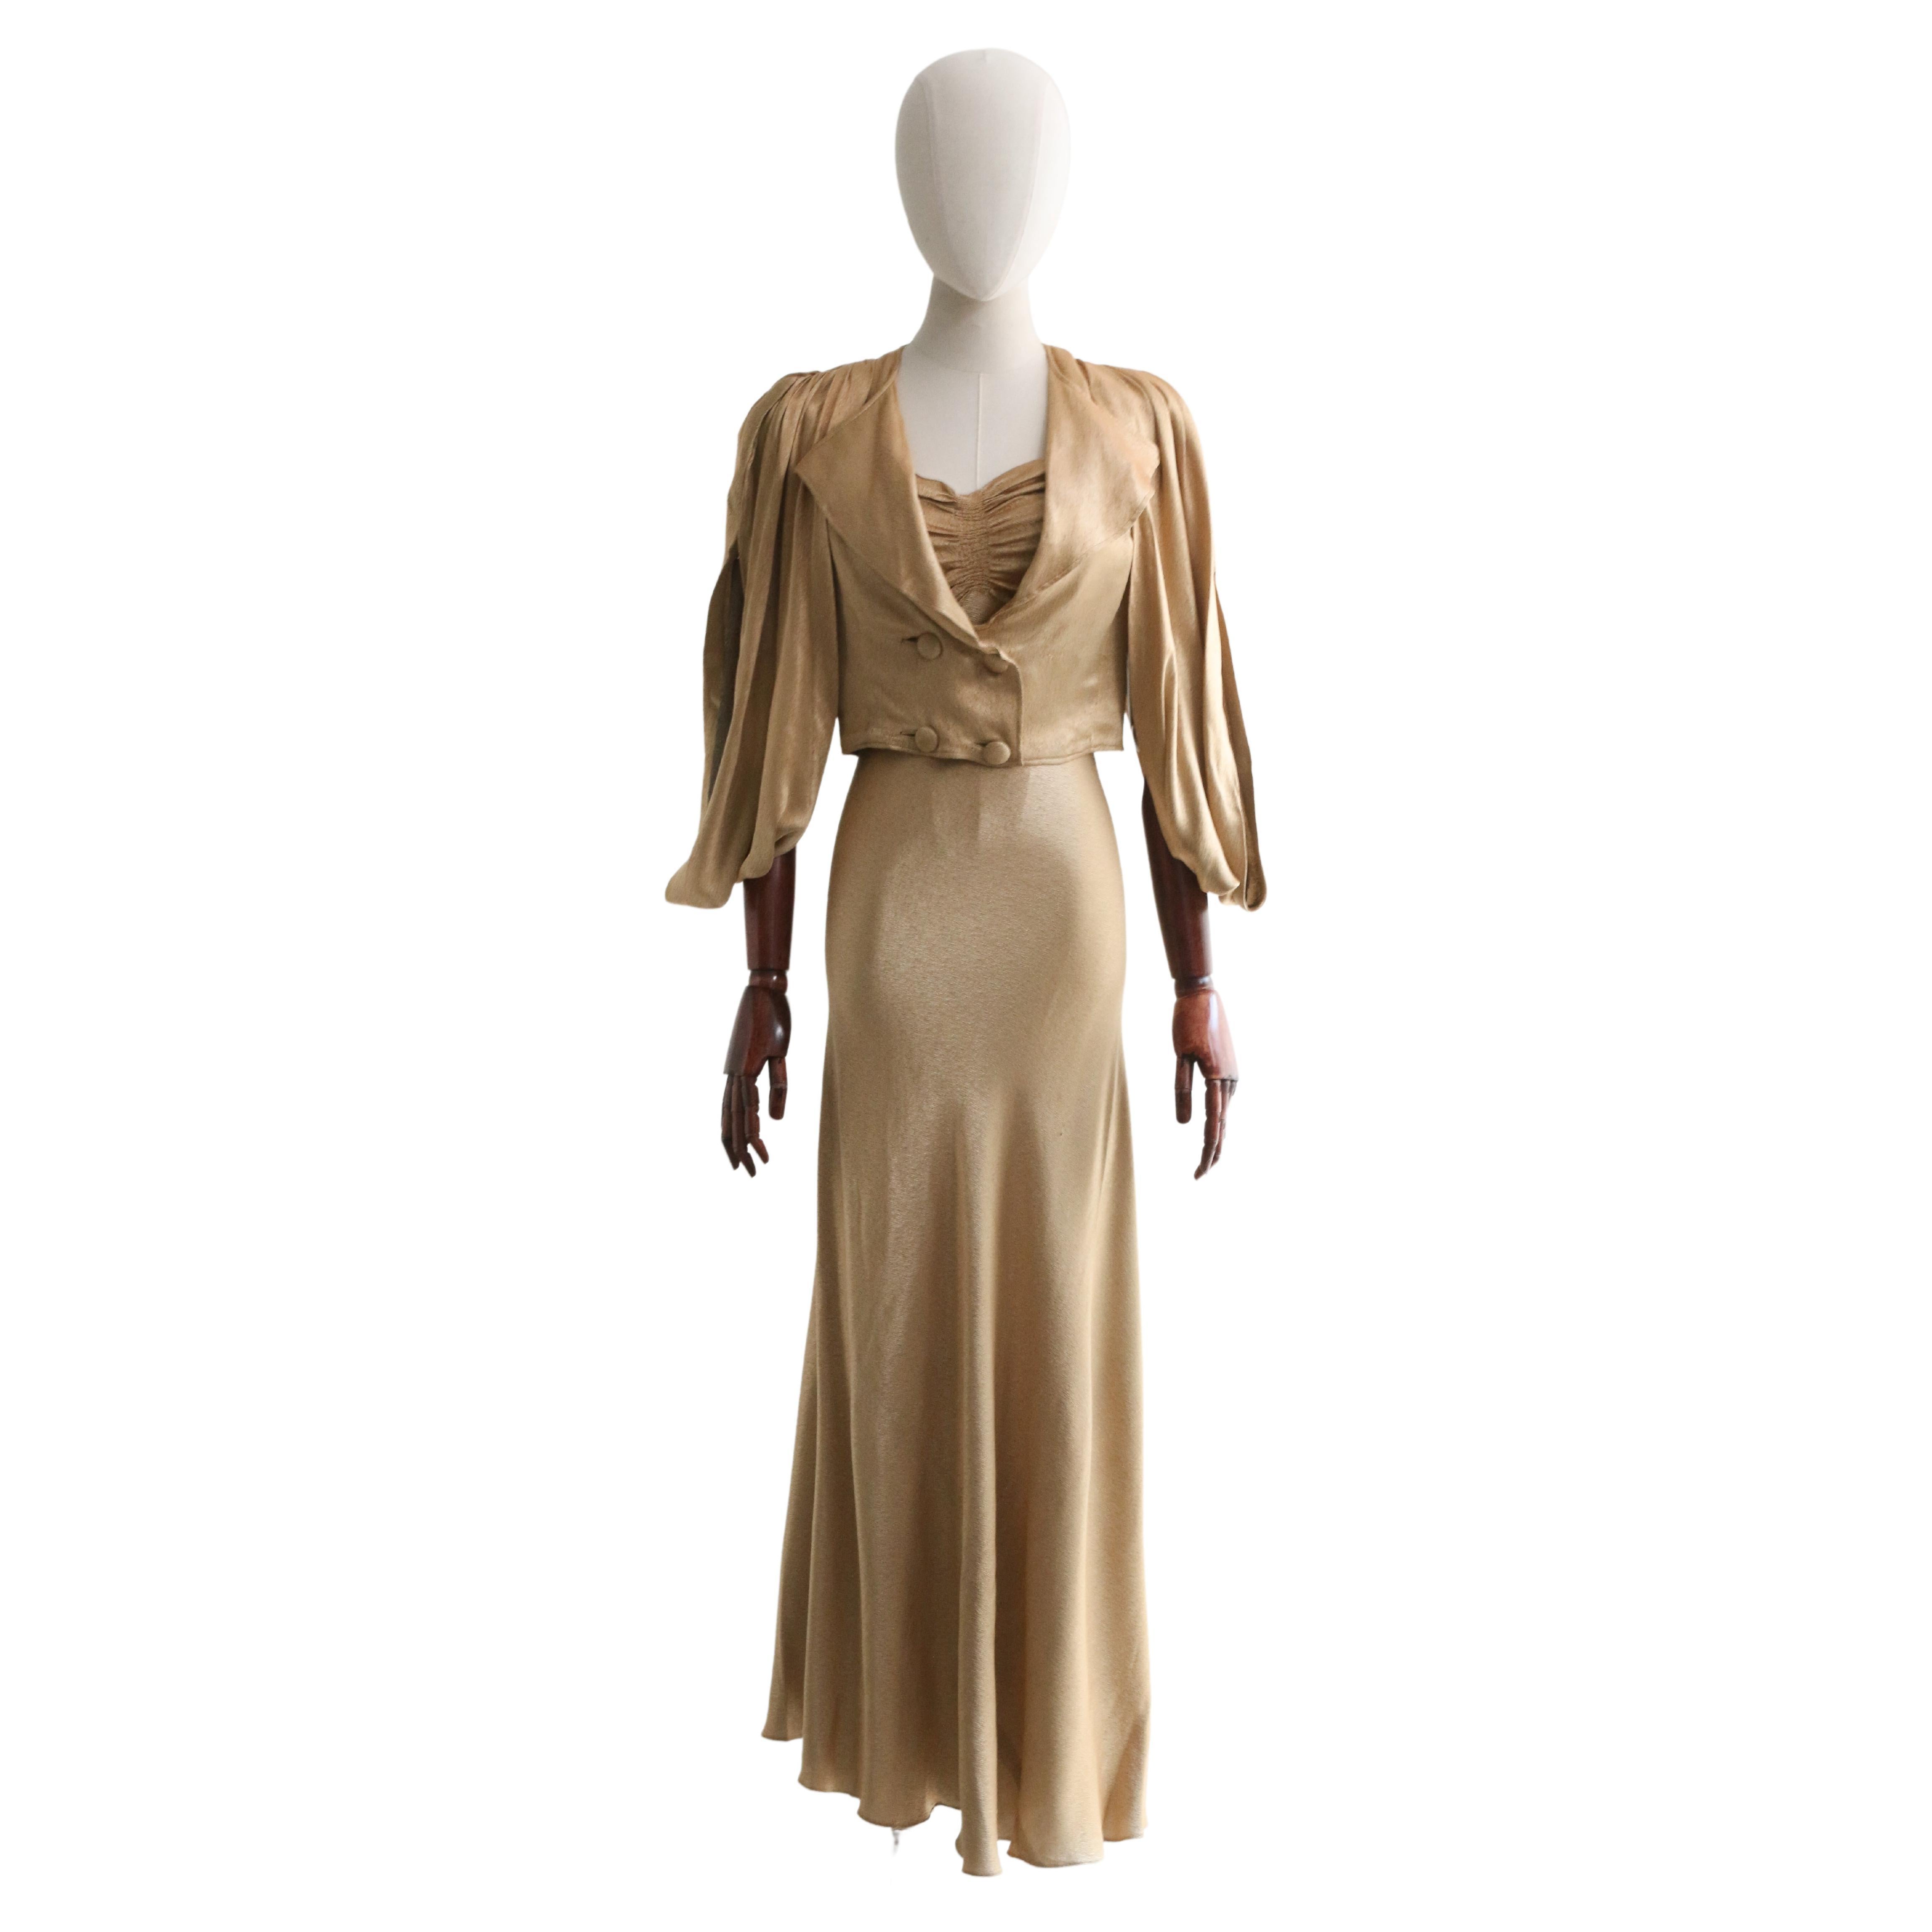 Vintage 1930's Gold Satin Dress & Jacket UK 6-8 US 2-4